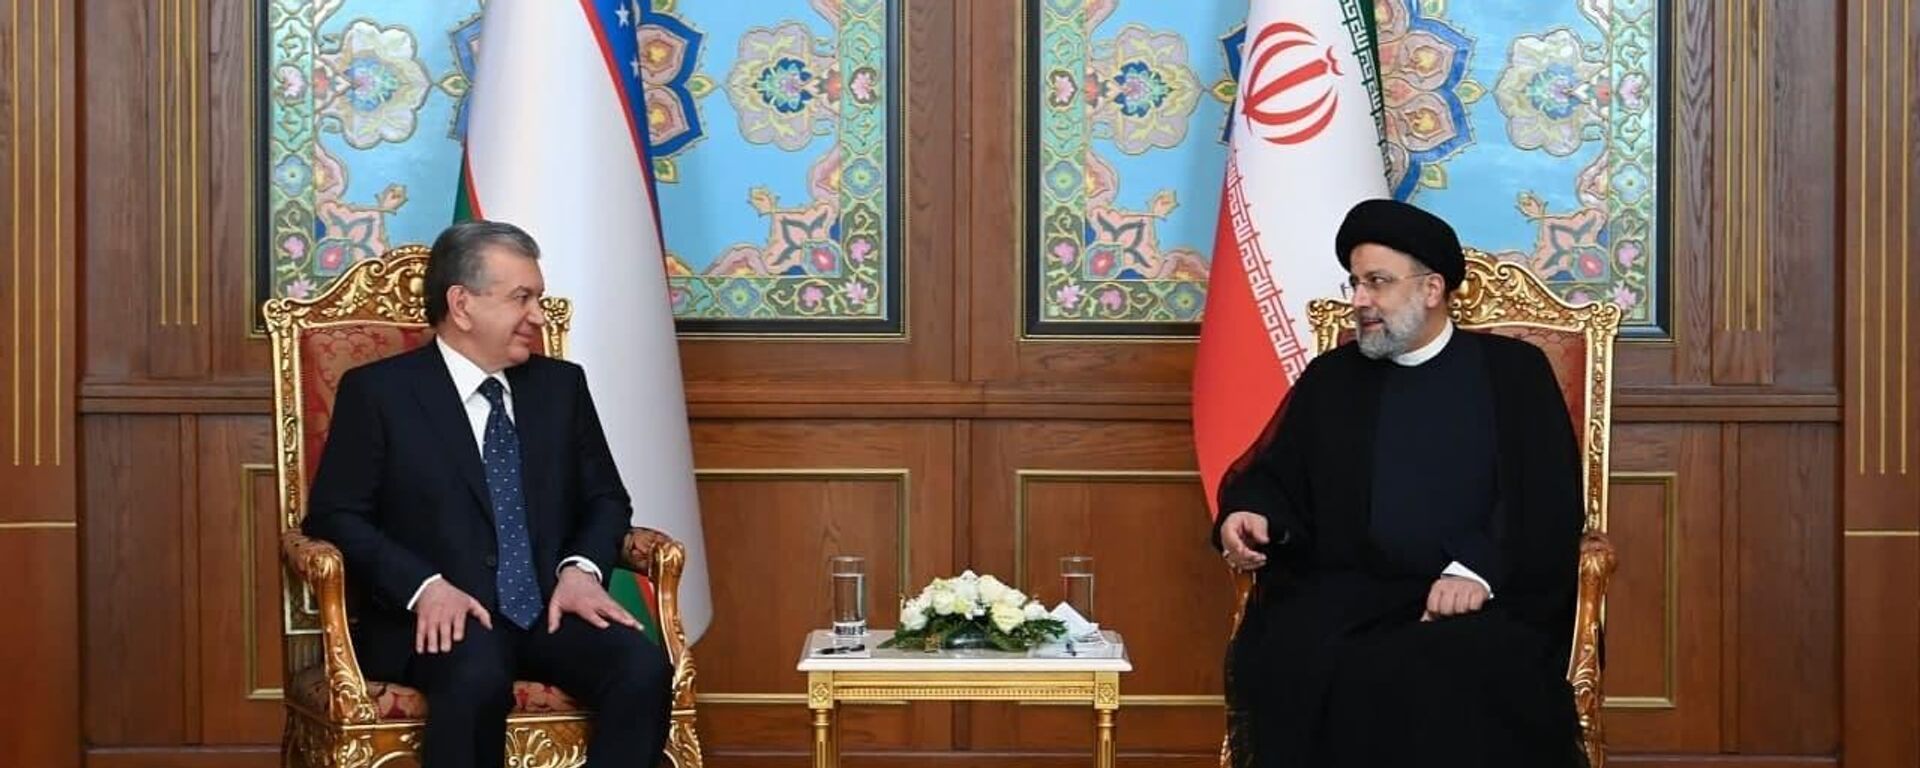  Шавкат Мирзиёев в Душанбе провел встречу с президентом Ирана Ибрахимом Раиси - Sputnik Узбекистан, 1920, 16.09.2021